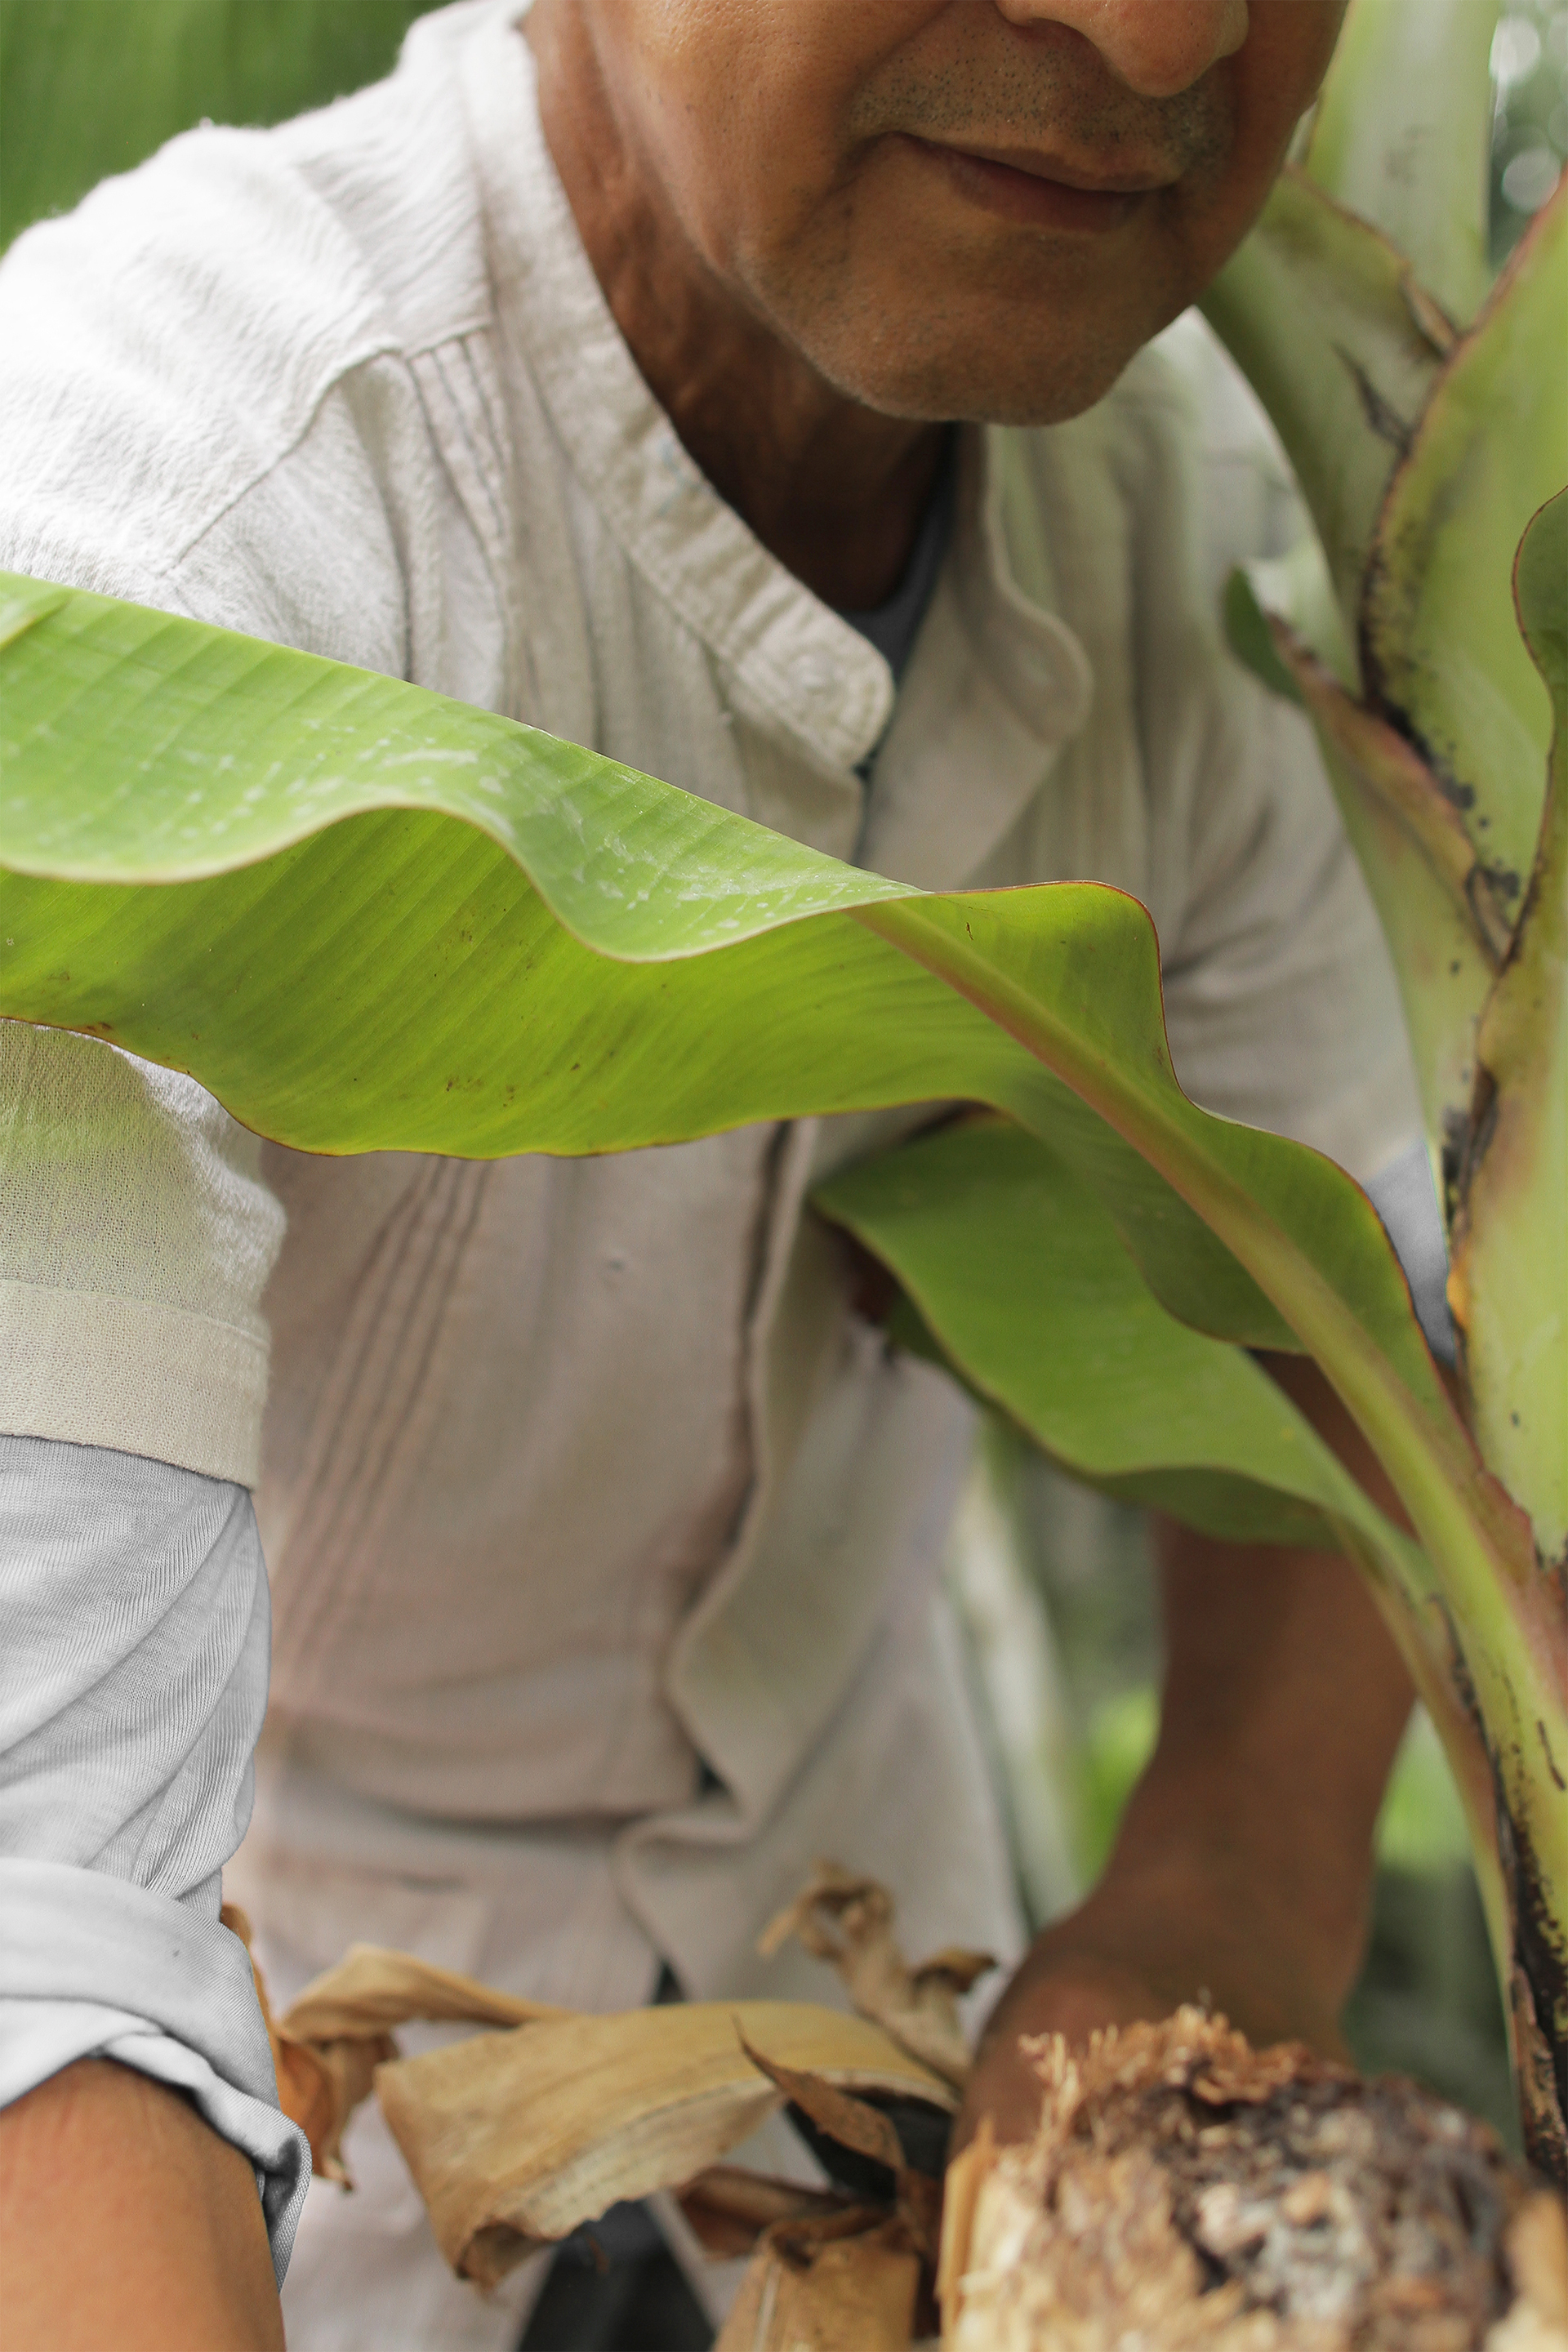 Bananenfasern, ein natürliches und reichlich vorhandenes Nebenprodukt, als Alternative zu Baumwolle. Das Ergebnis ist eine Faser gänzlich aus dem faserigen Abfall gefertigt und mit den übriggebliebenen Blüten natürlich gefärbt.